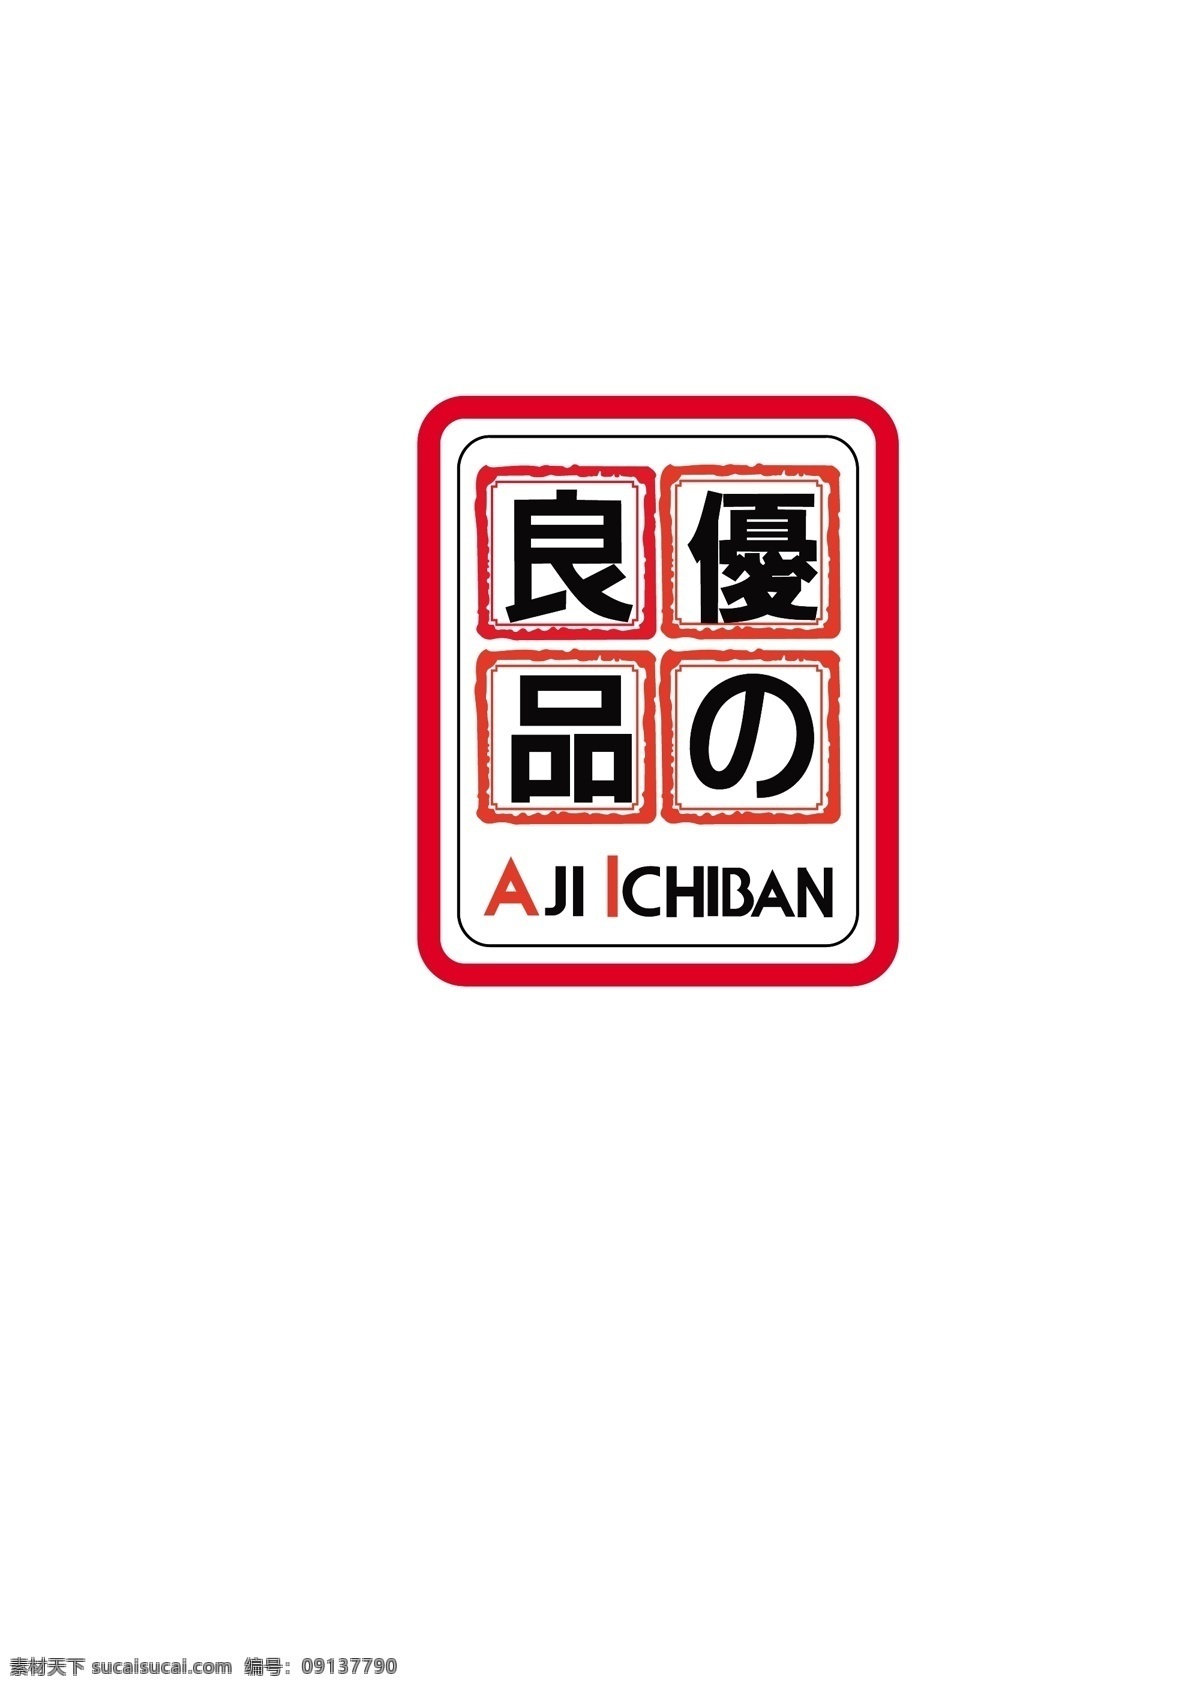 优 良 品 logo 标志 零食标志 零食logo 良品标志 红色标识 黑色标志 之标志 良标志 aji ichiban 食品logo logo设计